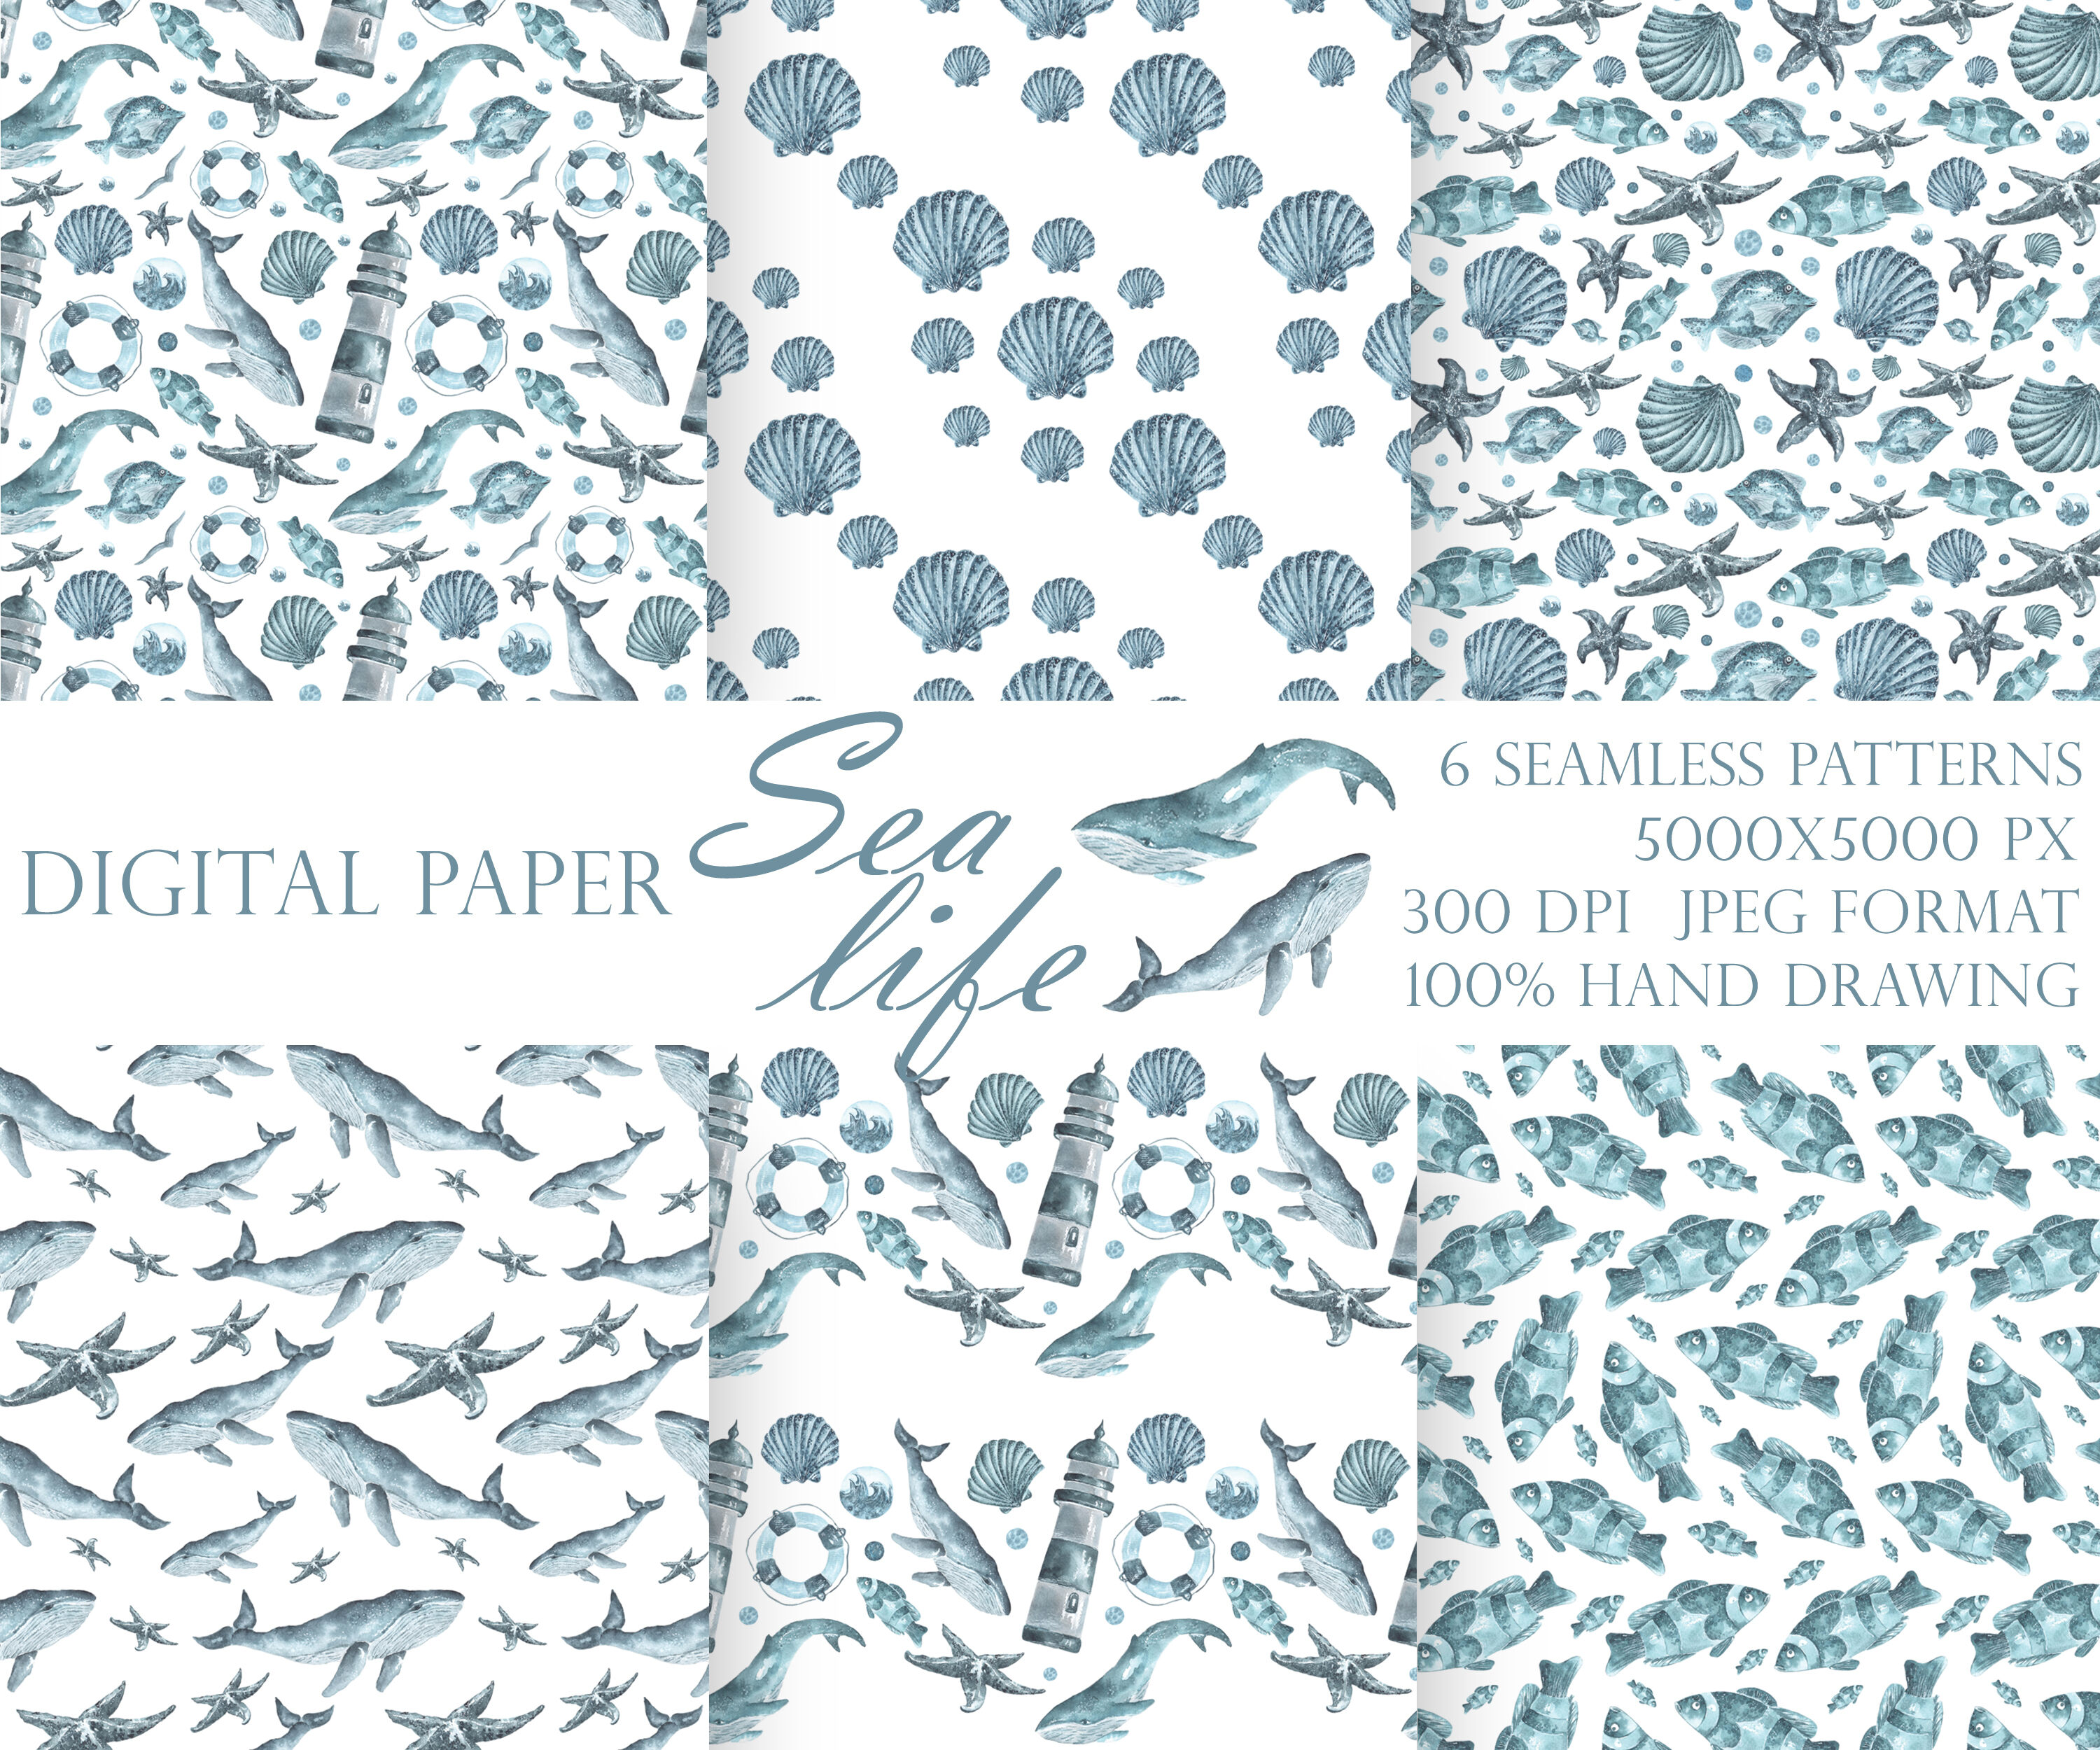 Pendleton Pattern (digital paper) –